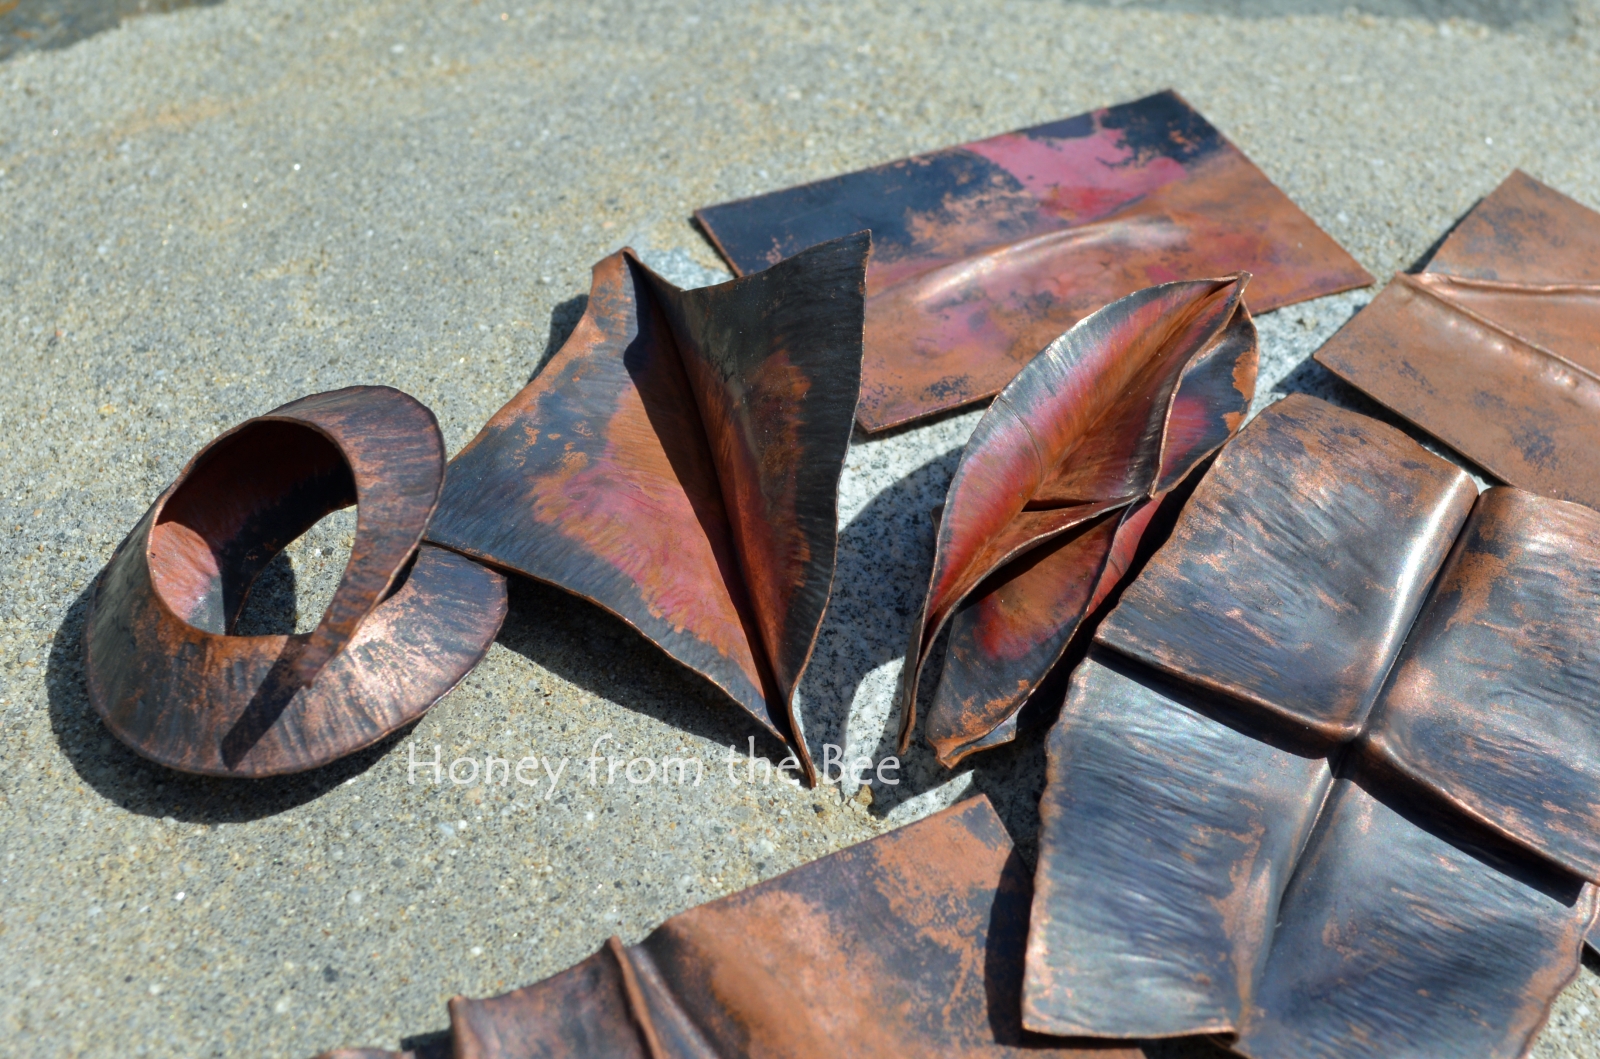 Foldformed copper samples